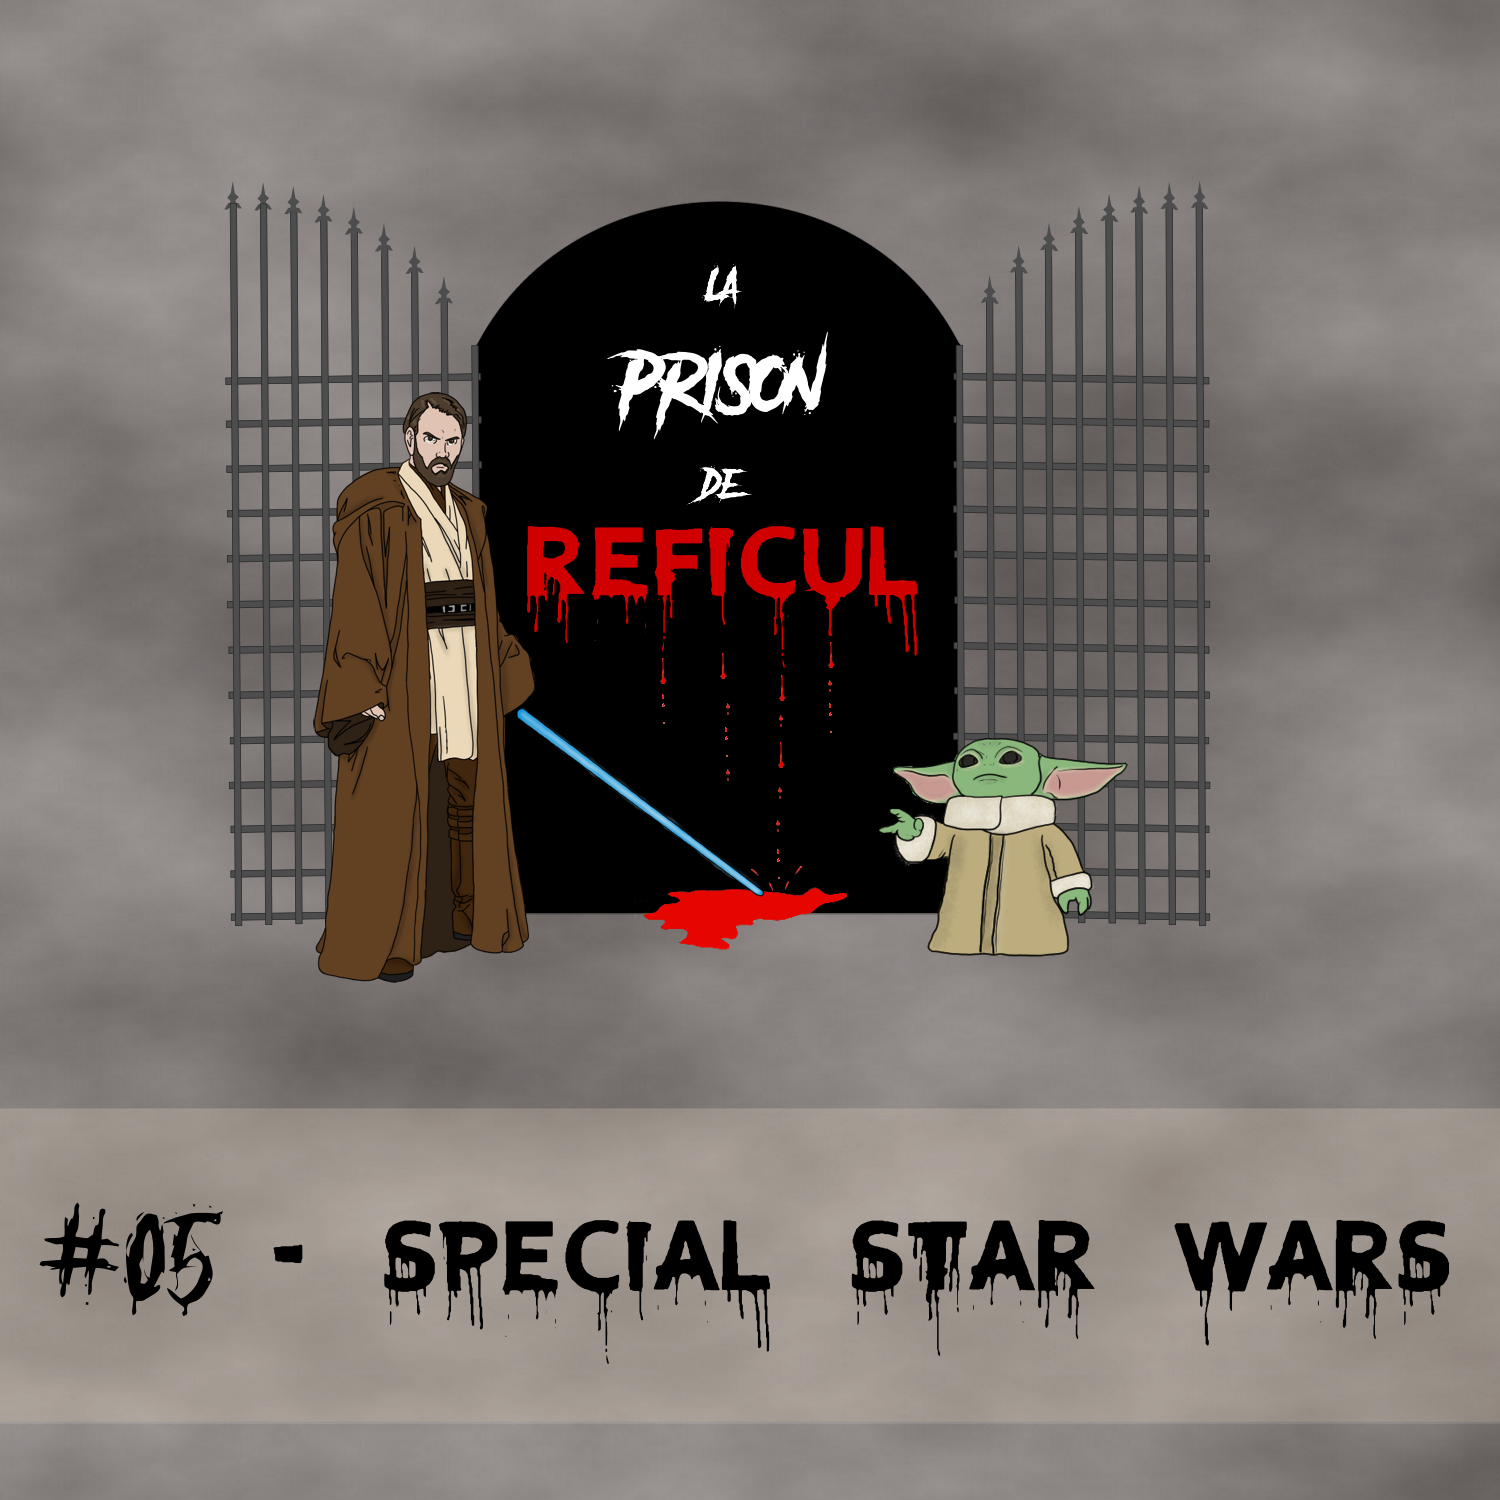 #05 - Spécial Star Wars